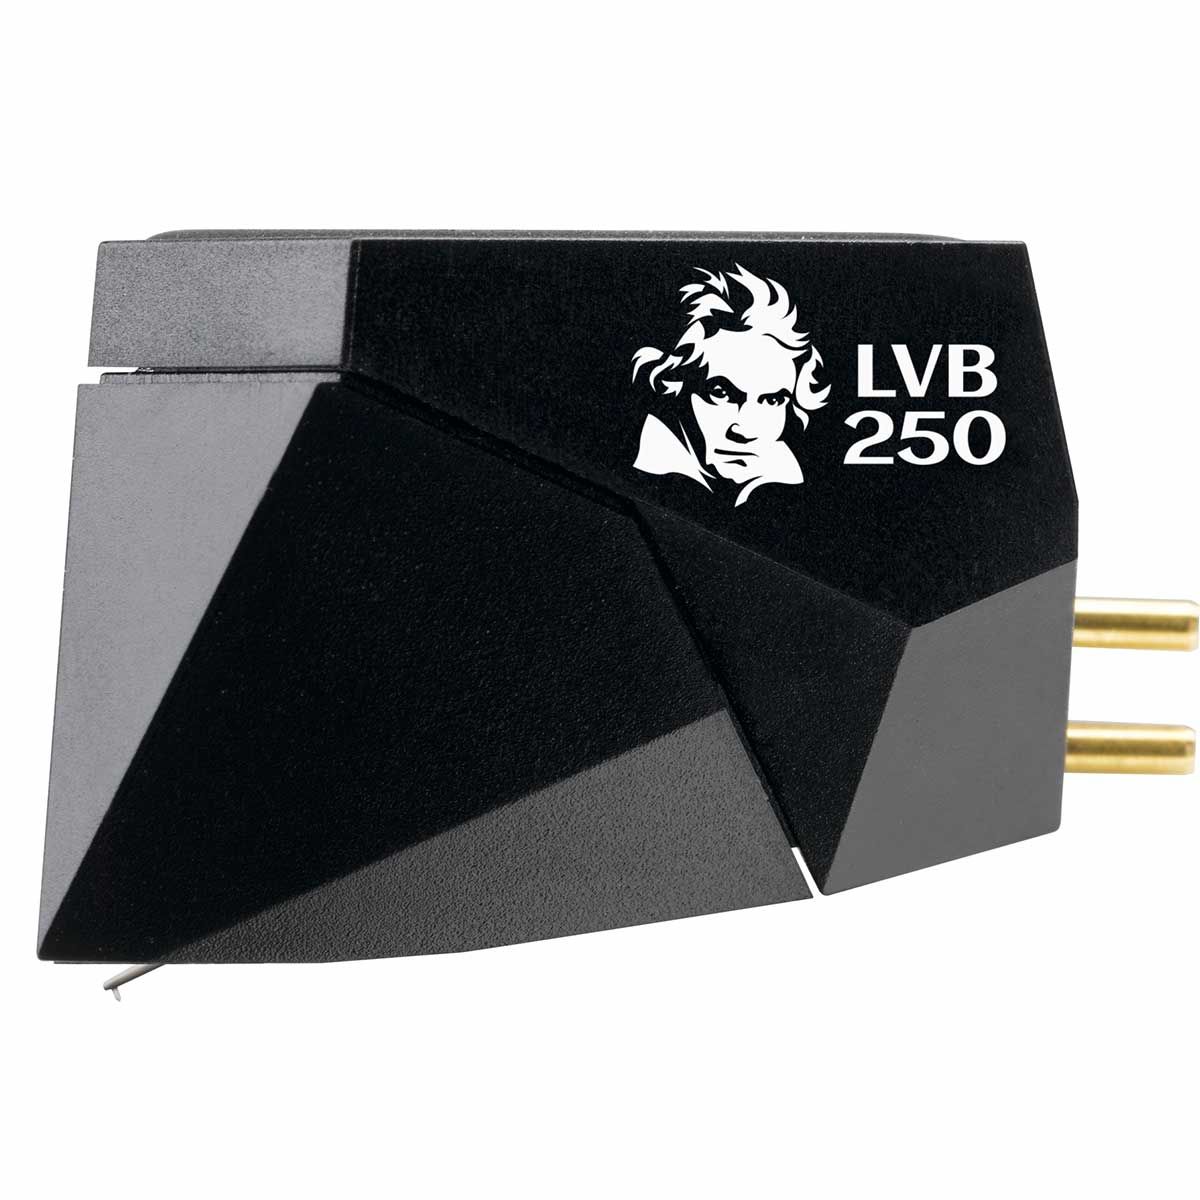 Ortofon 2M Black LVB 250 Moving Magnet Phono Cartridge, side angle